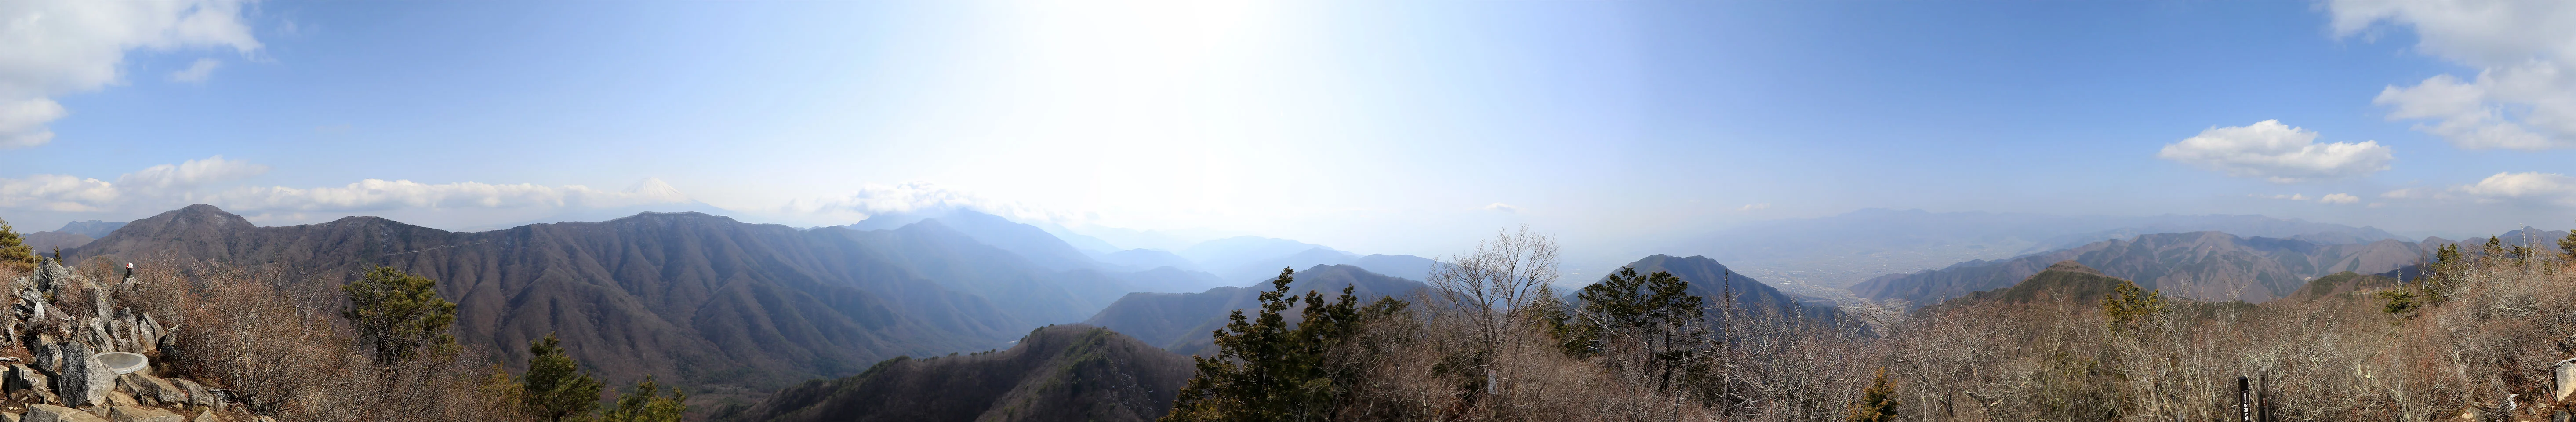 釈迦ヶ岳からのパノラマ写真